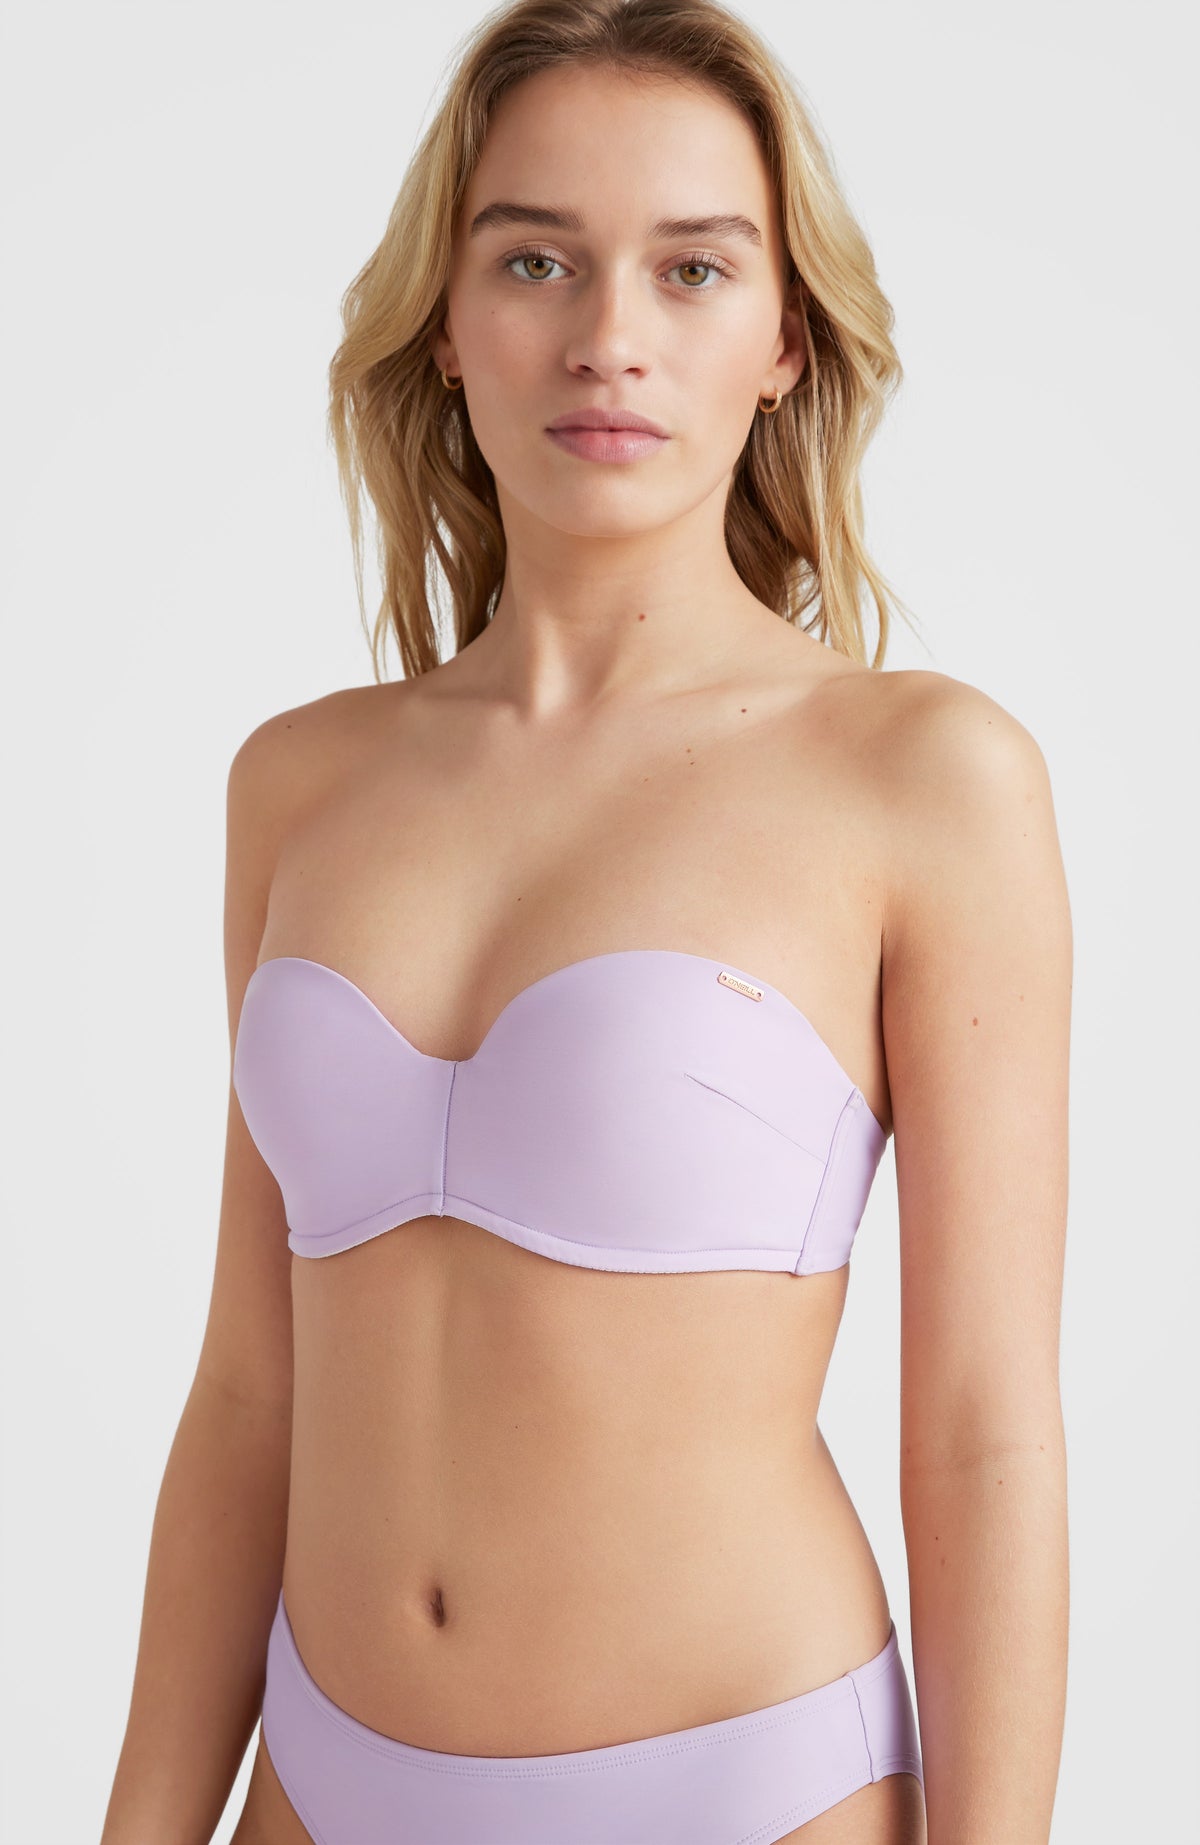 ASYOU - Micro bandeau-bikinitopje met halternek in roze